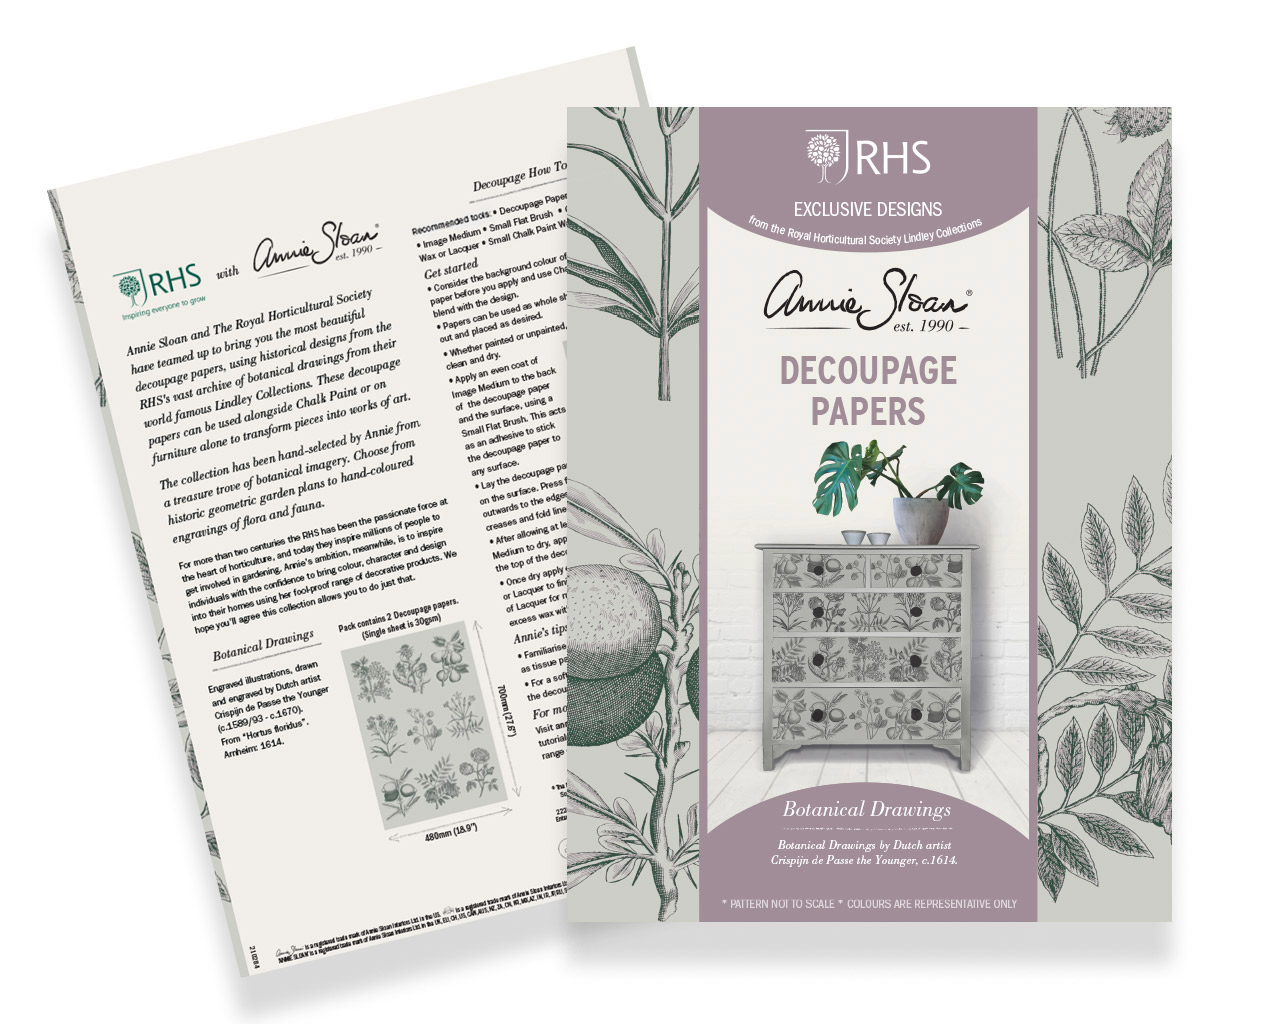 Botanical Drawings Decoupagepapiere von Annie Sloan und RHS - Produktfoto